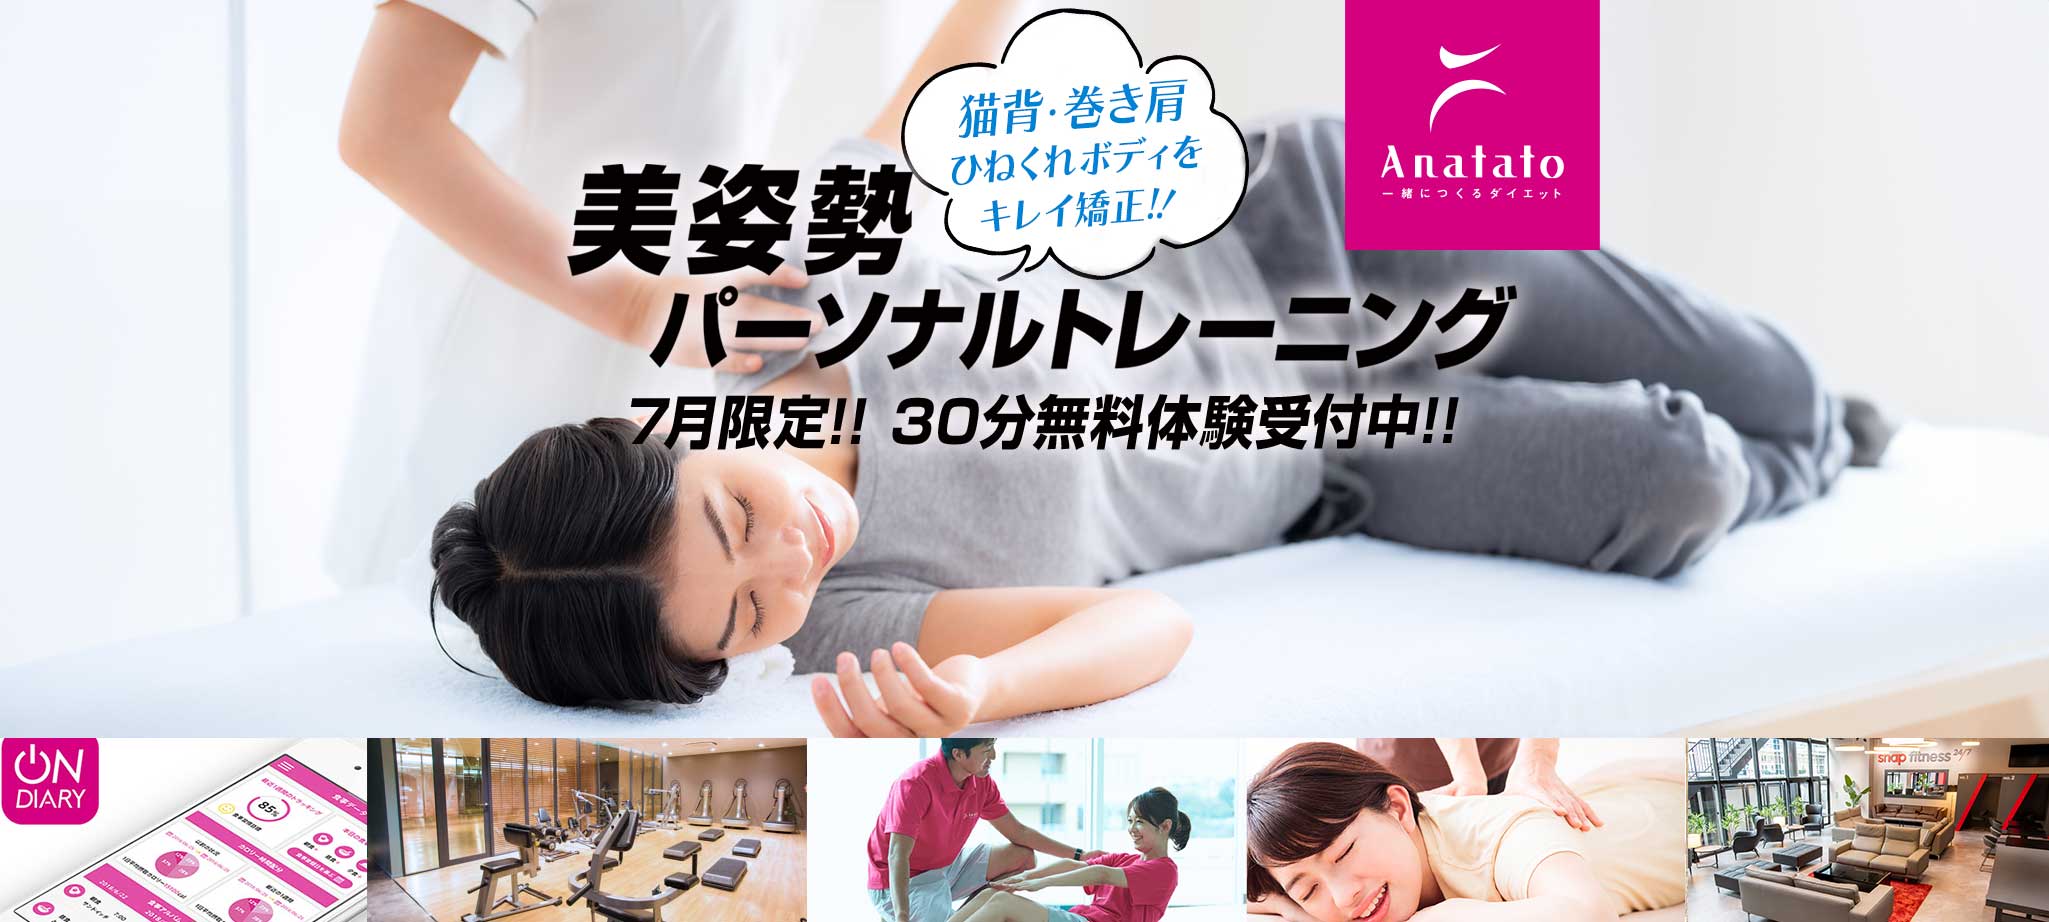 Anatato(アナタト)7月限定キャンペーン